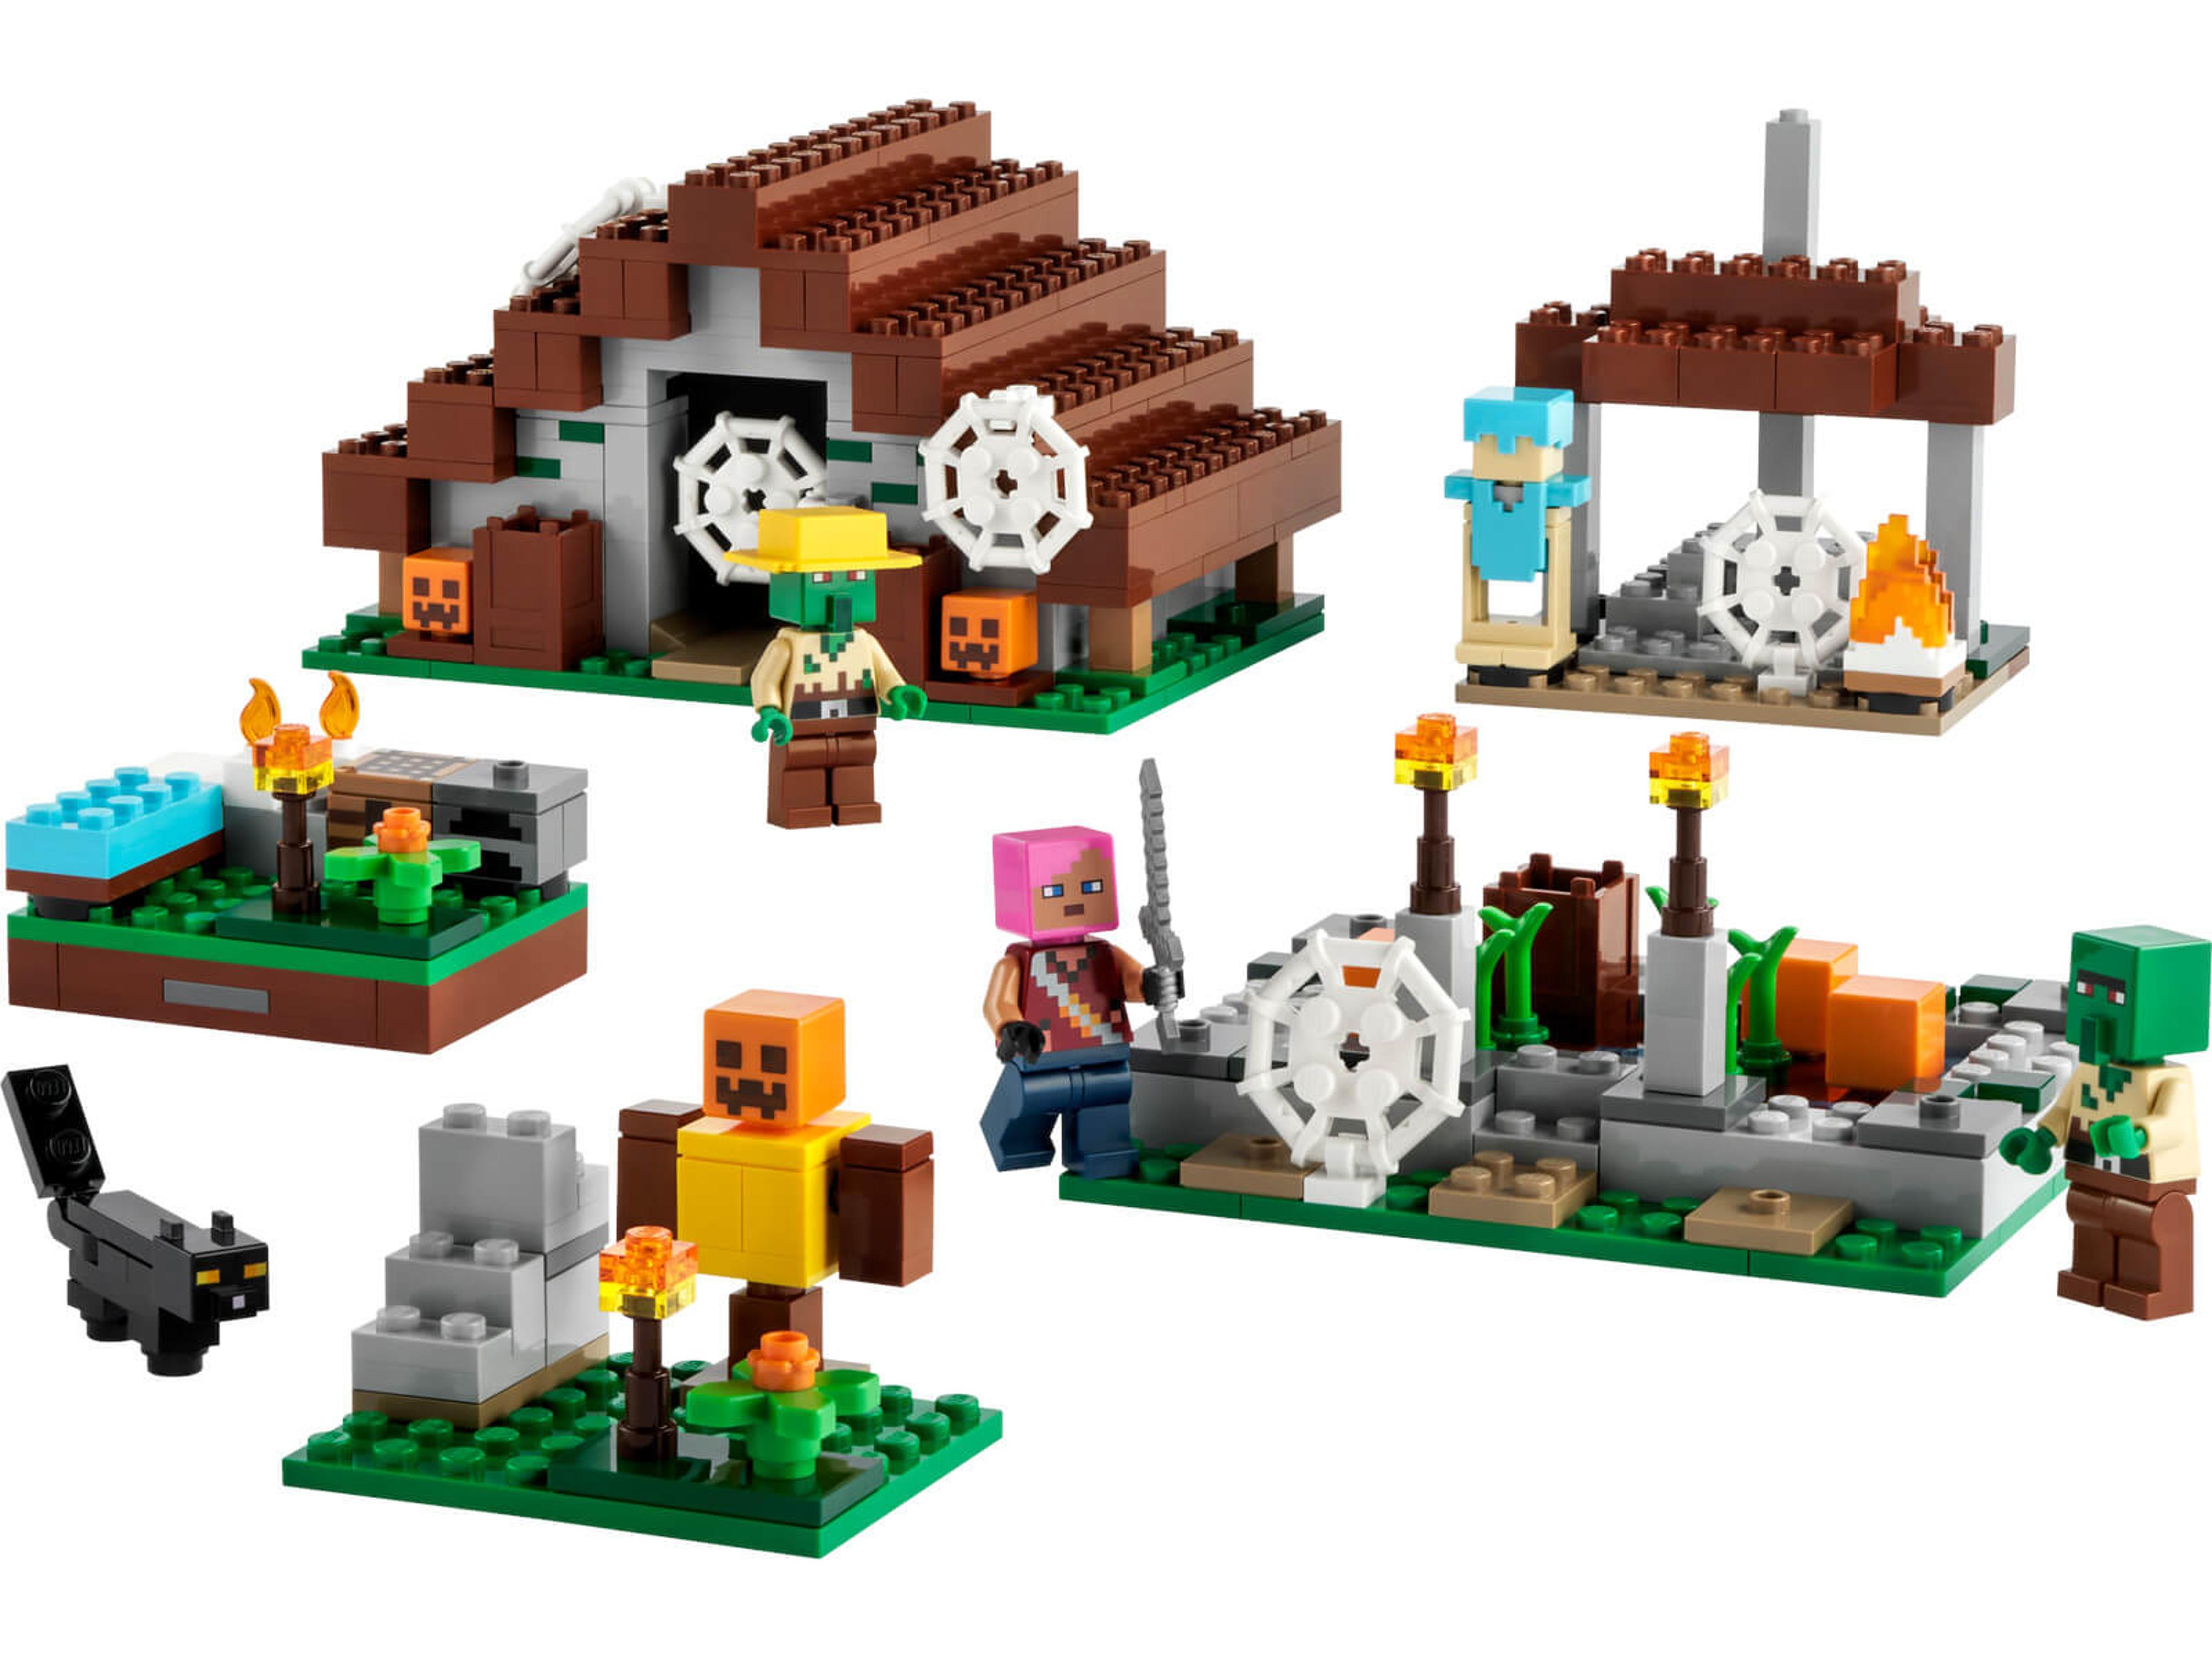 LEGO Minecraft - The Abandoned Village